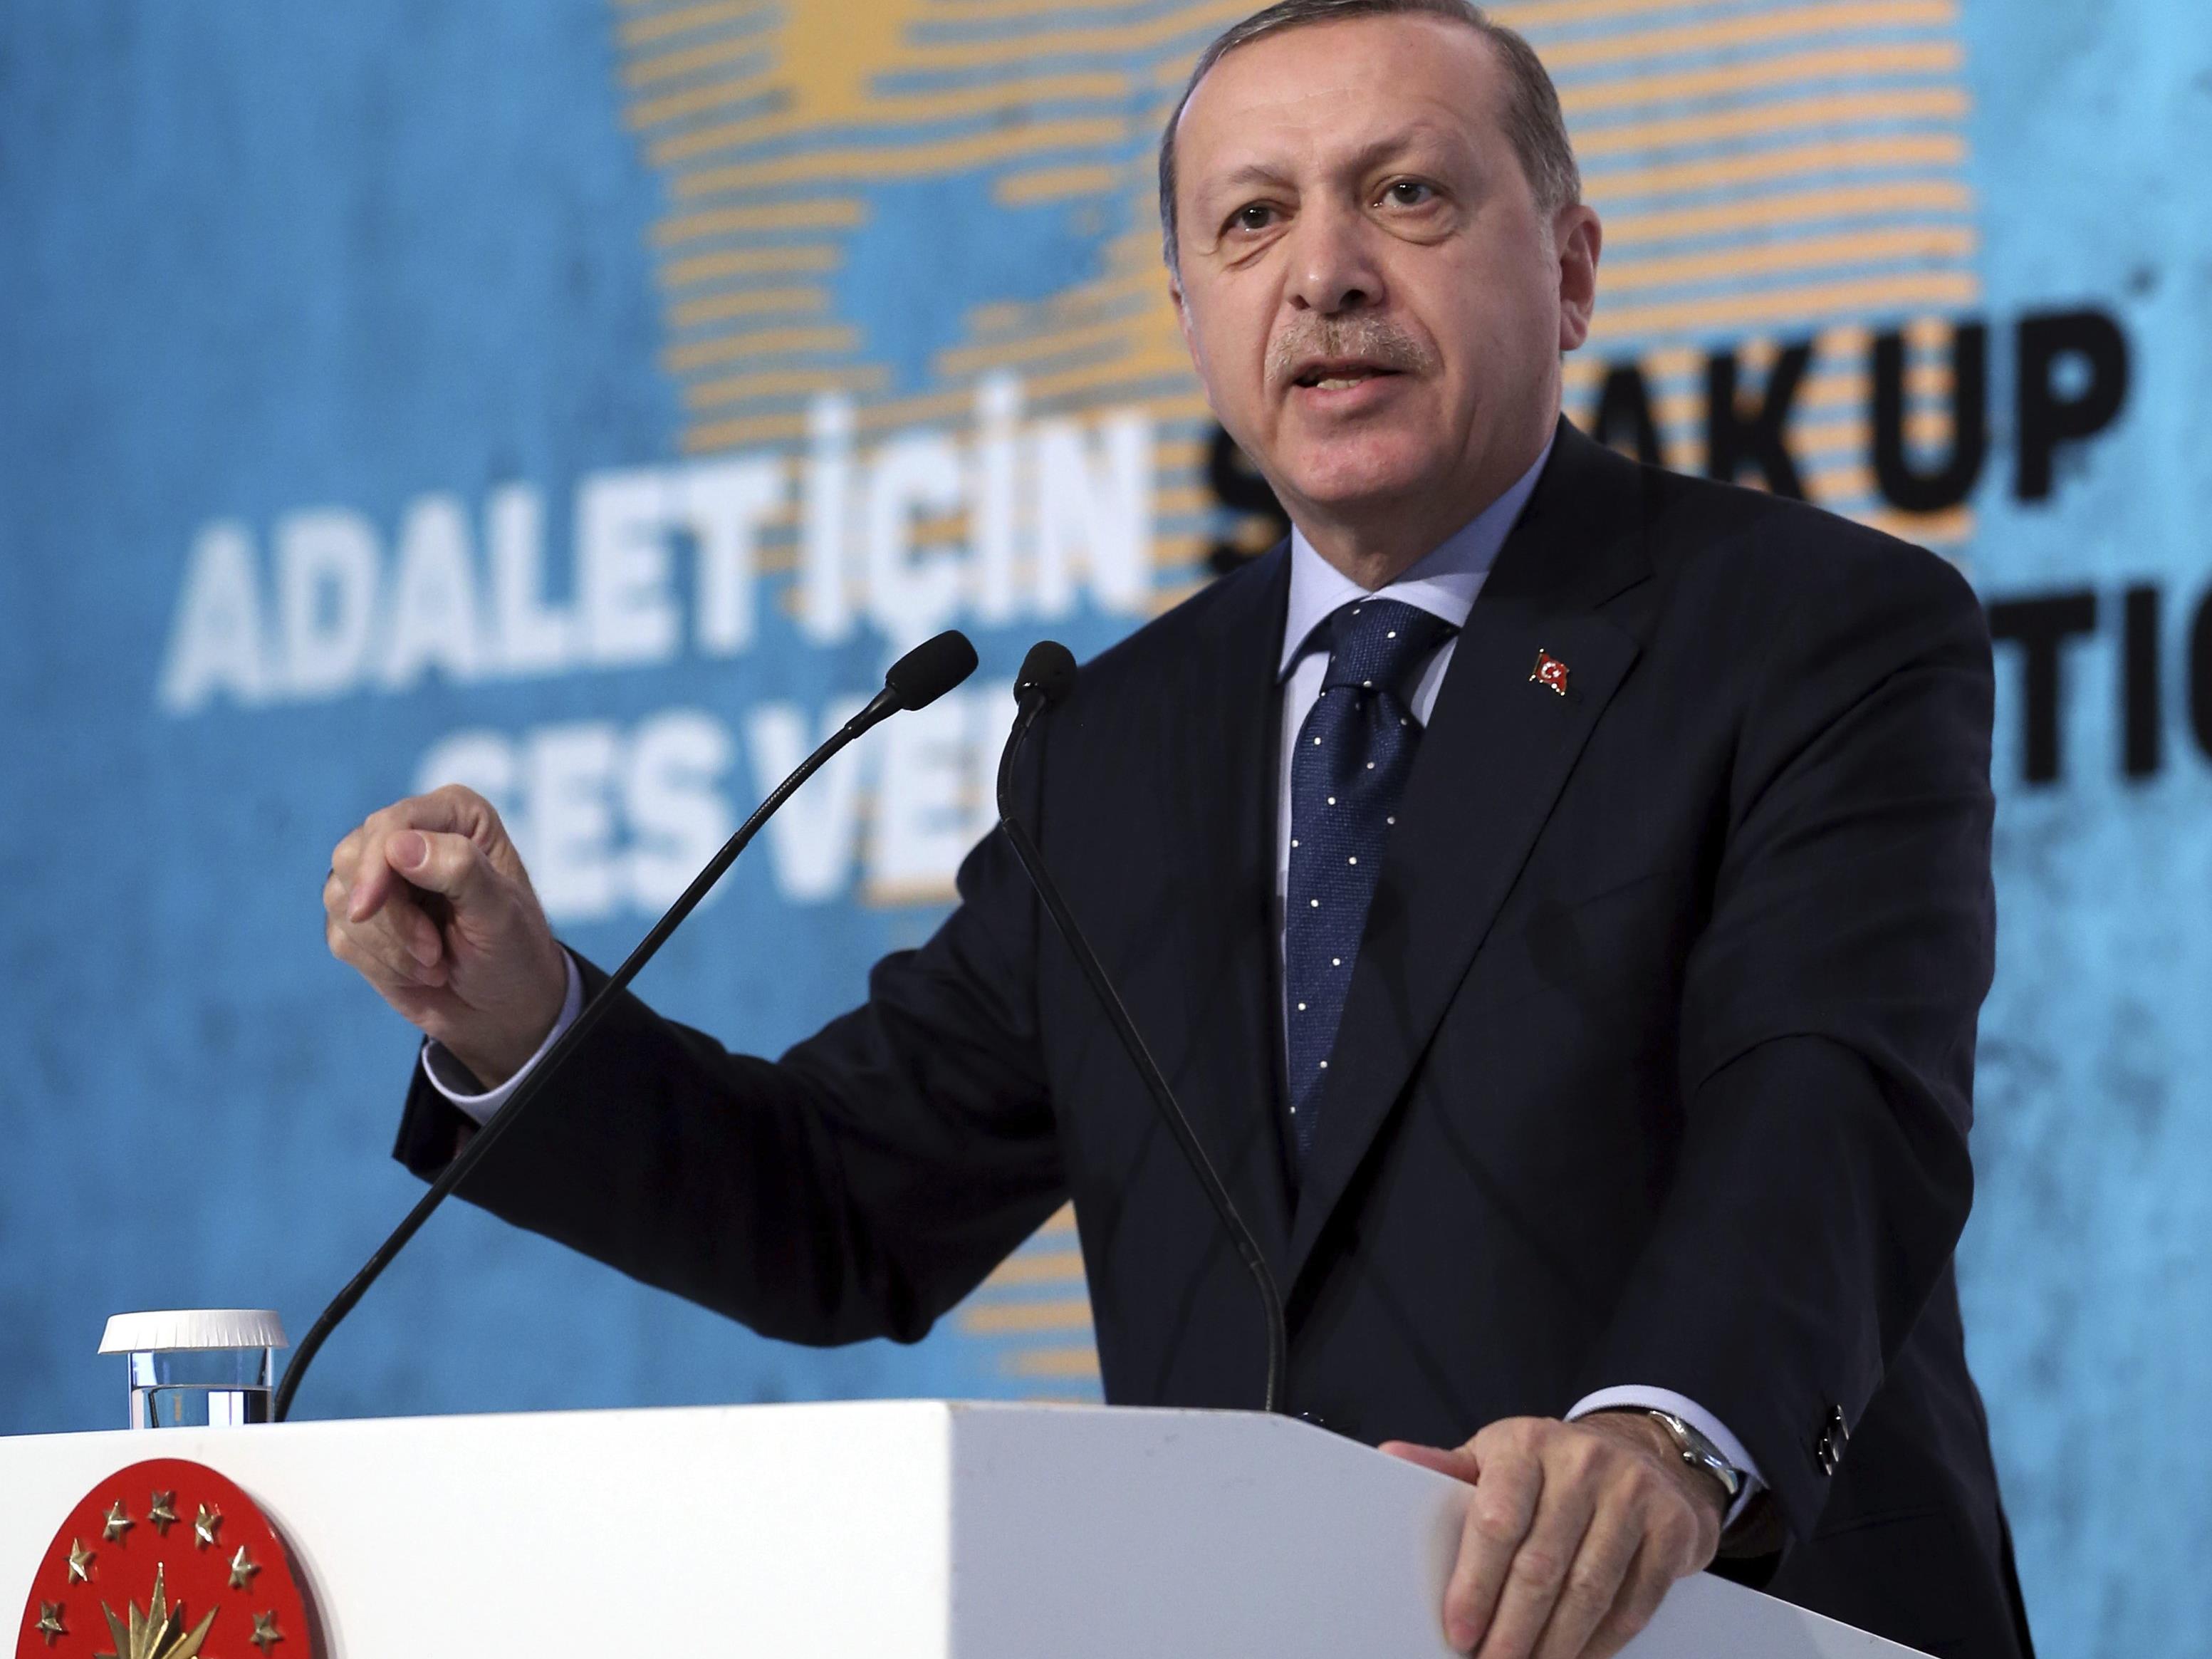 Sollte die EU Ihrer Meinung nach die Drohungen Erdogans ignorieren und die Beitrittsverhandlungen einfrieren?